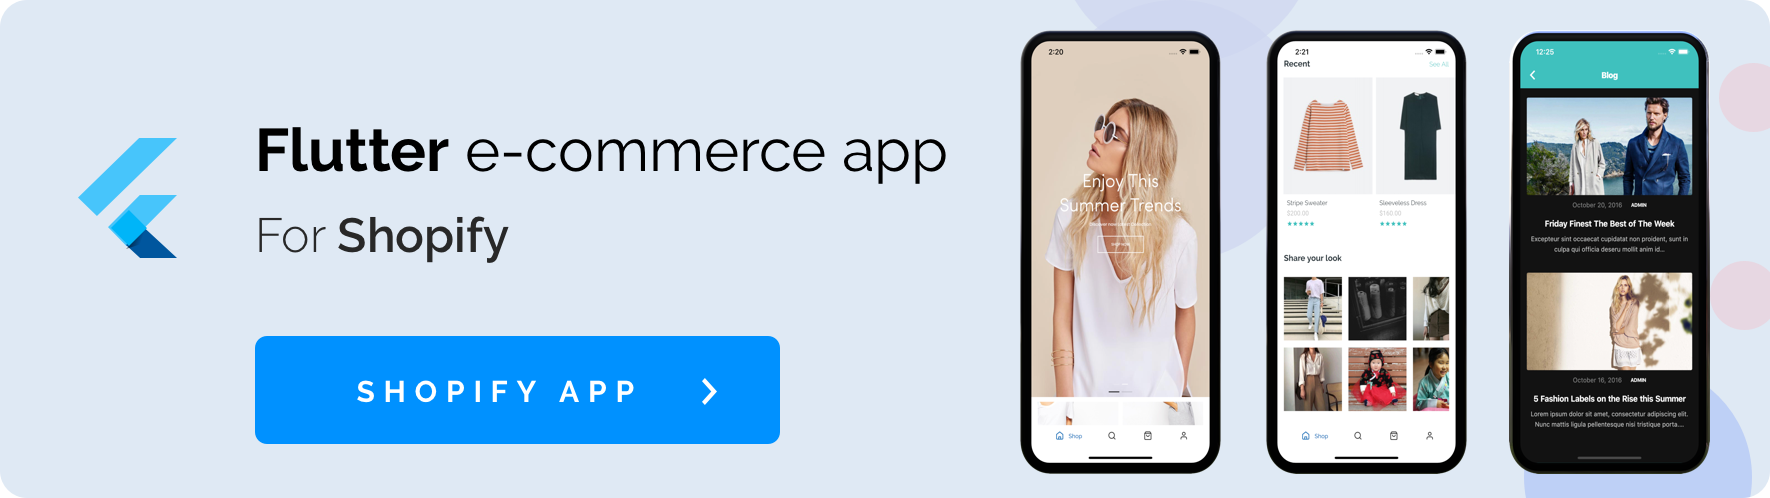 Fluxstore Prestashop - Flutter E-commerce Full App - 7